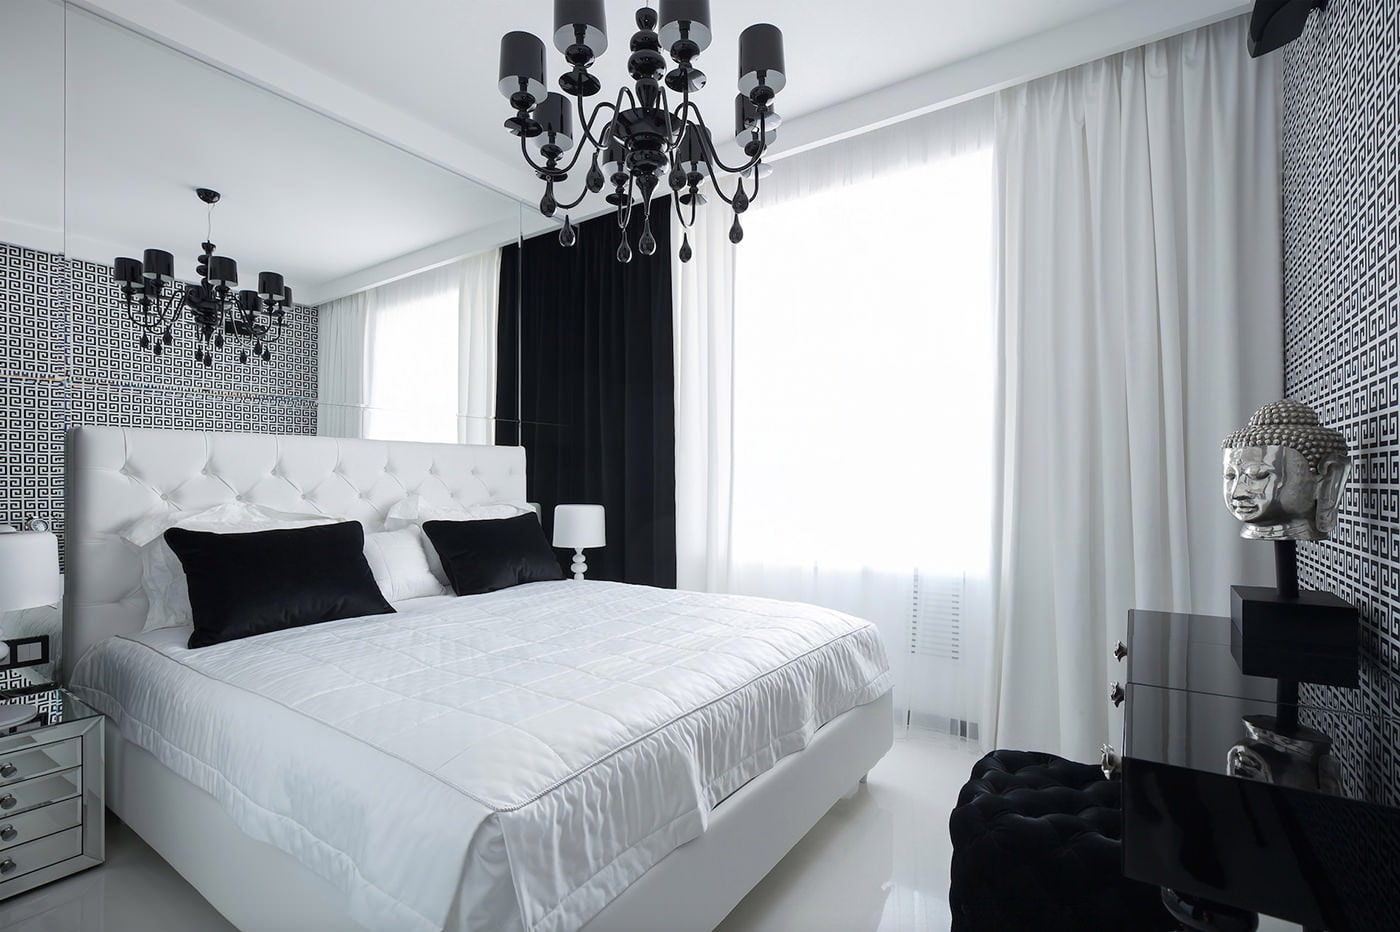 Спальня 10 кв. м. — идеи интерьера и варианты стильного оформления маленьких комнат (105 фото)